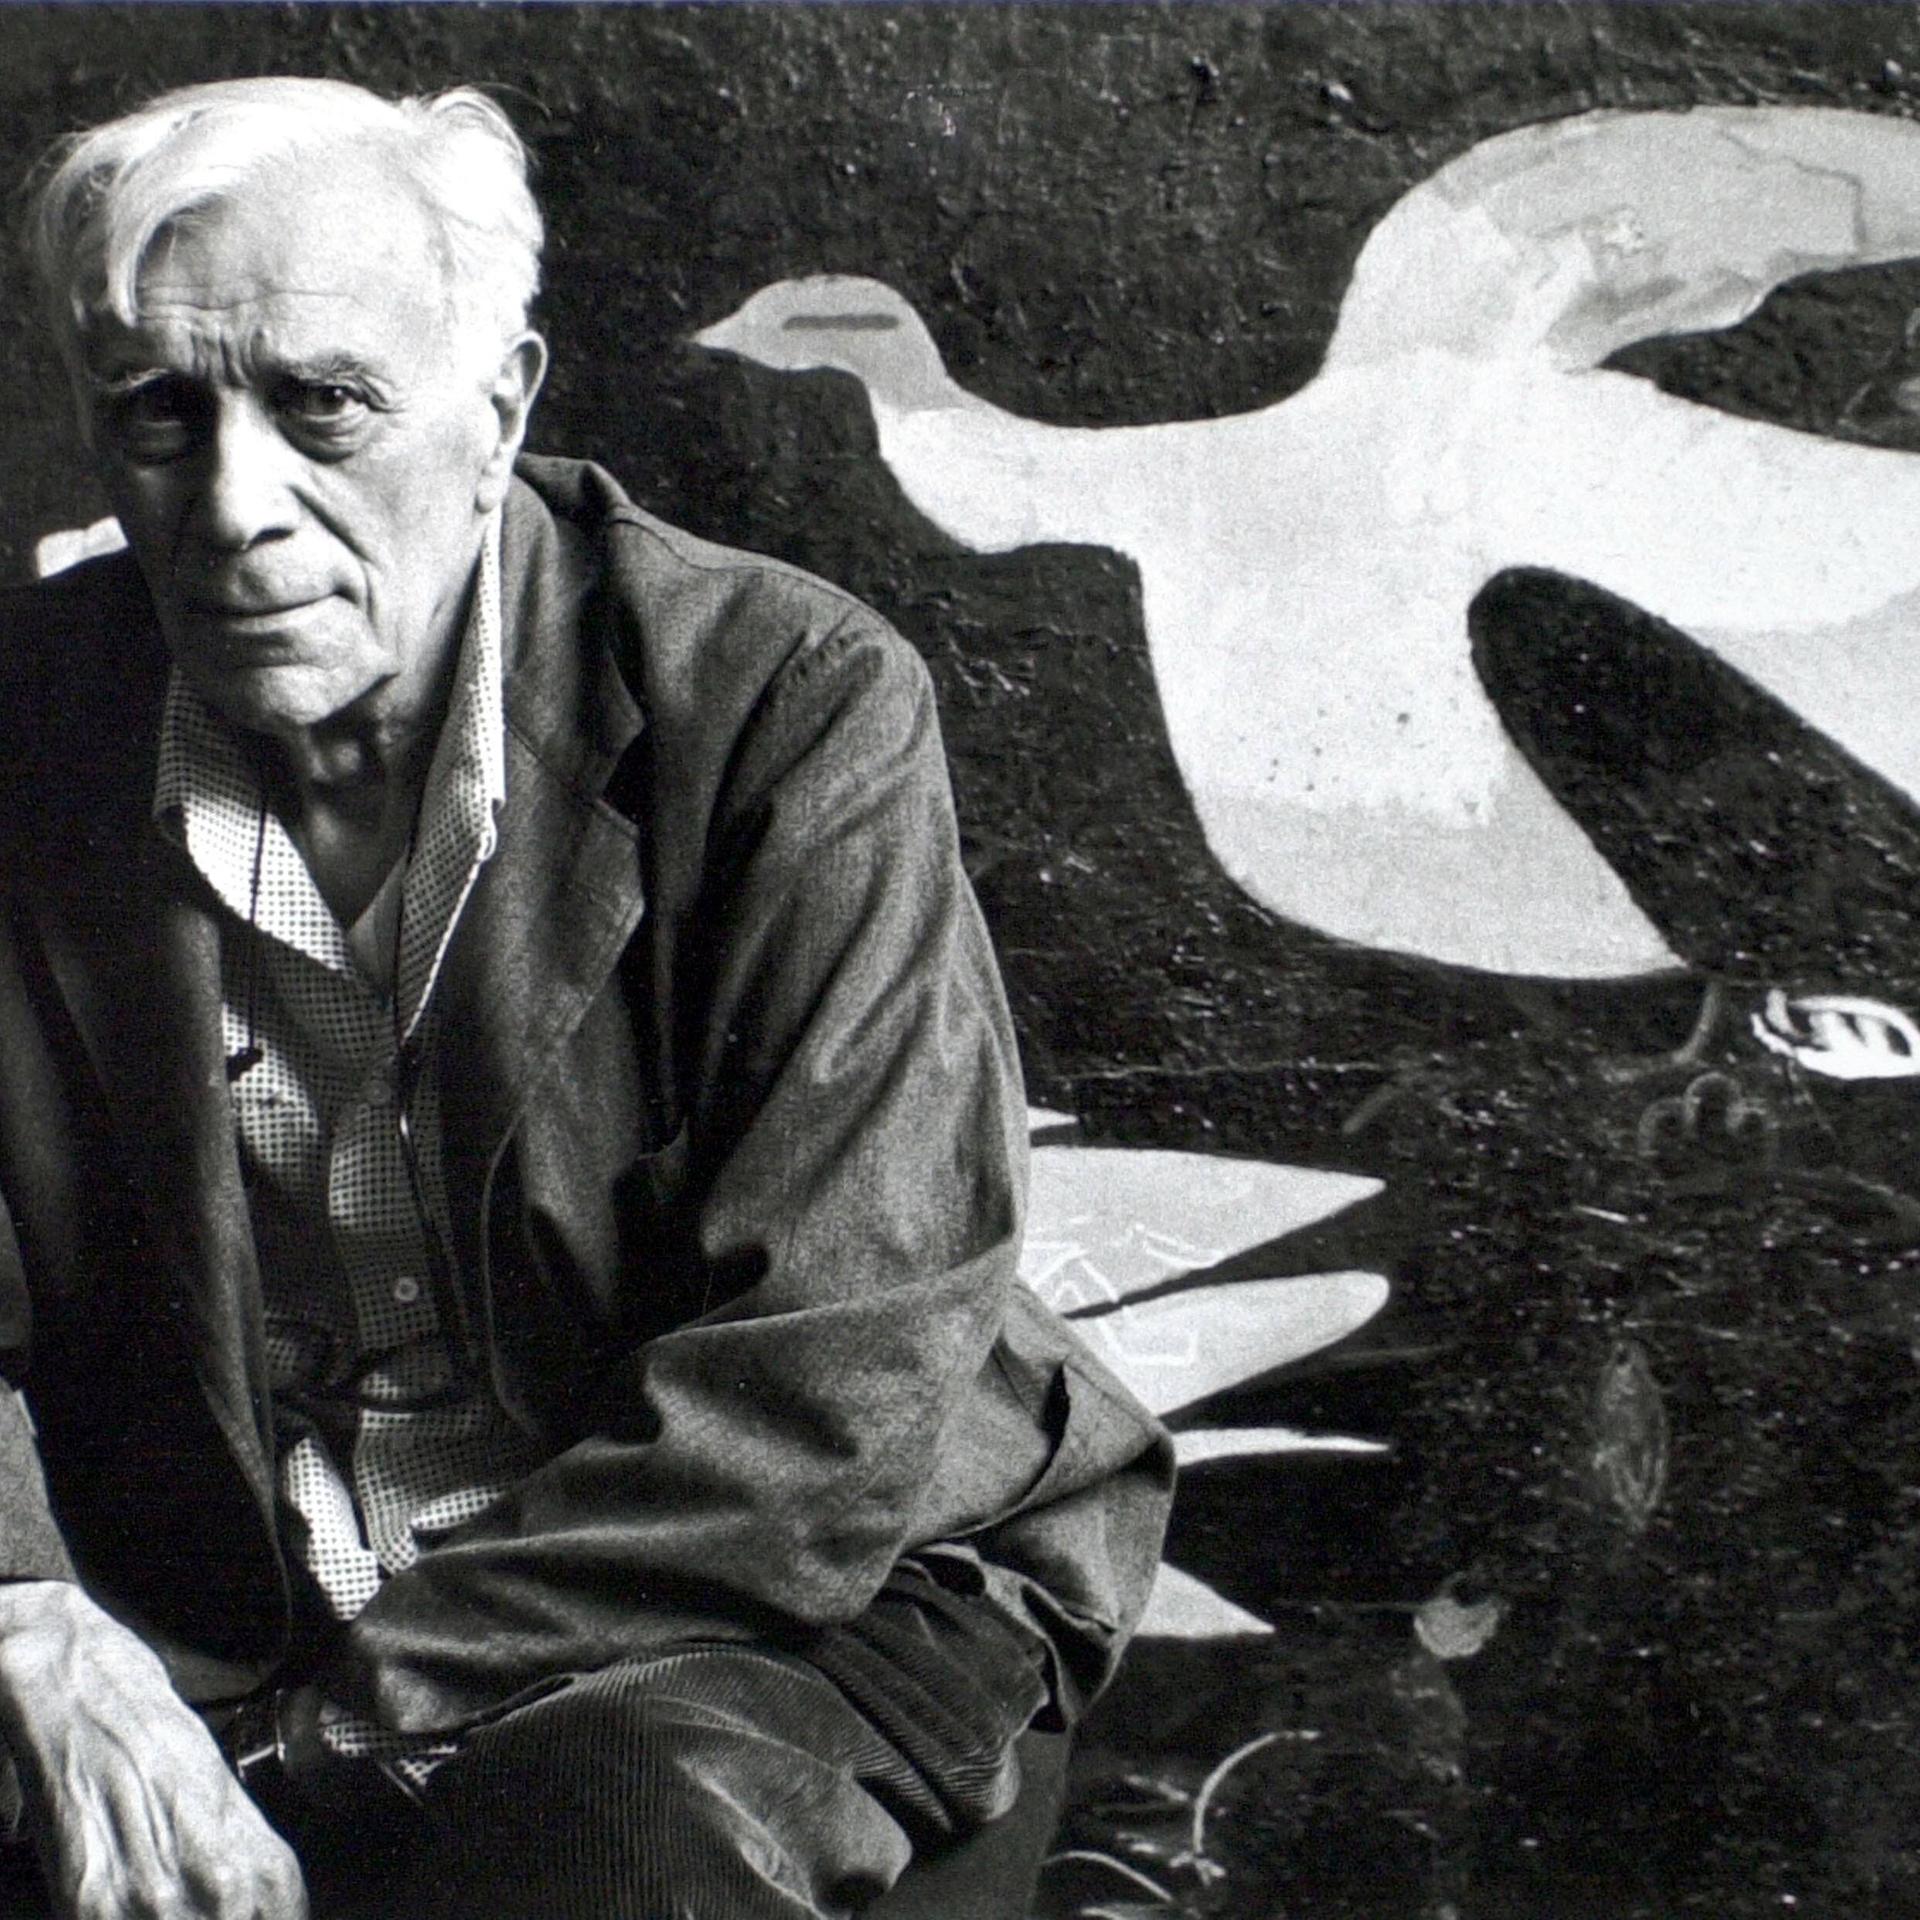 Schwarzweiß-Foto zeigt in die Kamera blickenden Mann vor einer Leinwand mit kubistisch abstrahierter Taube